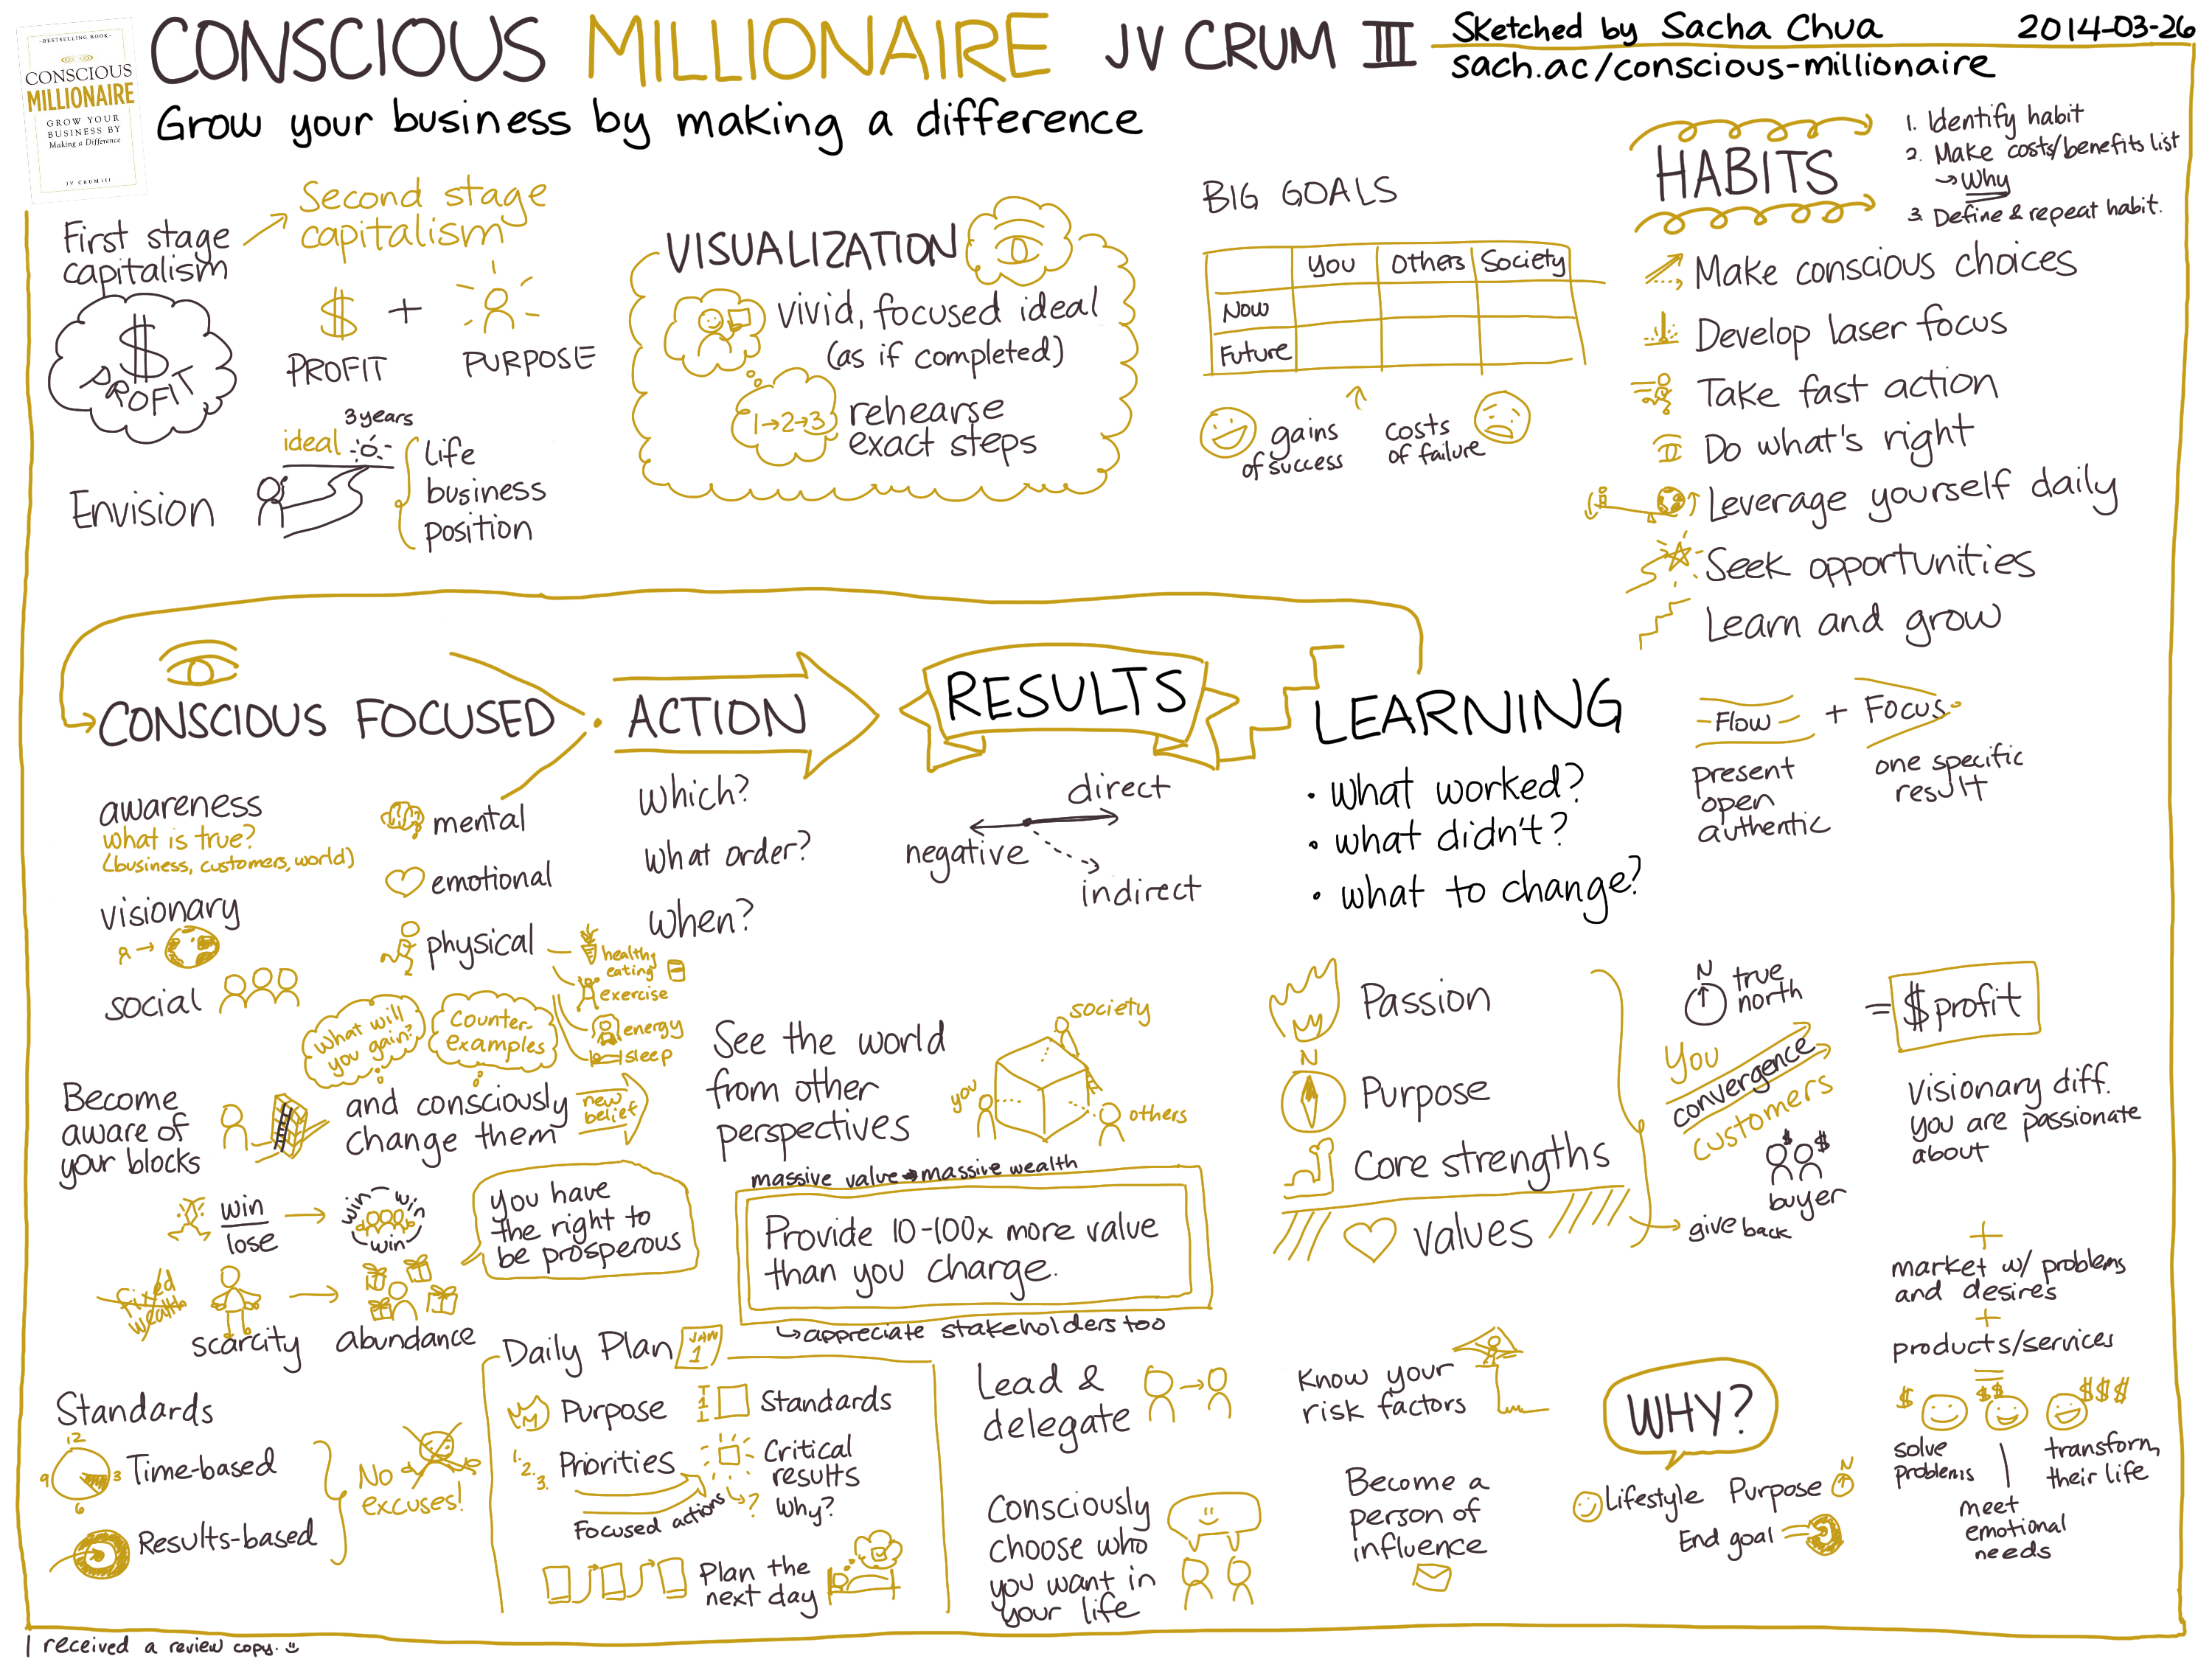 2014-03-26 Book - Conscious Millionaire - JV Crum III